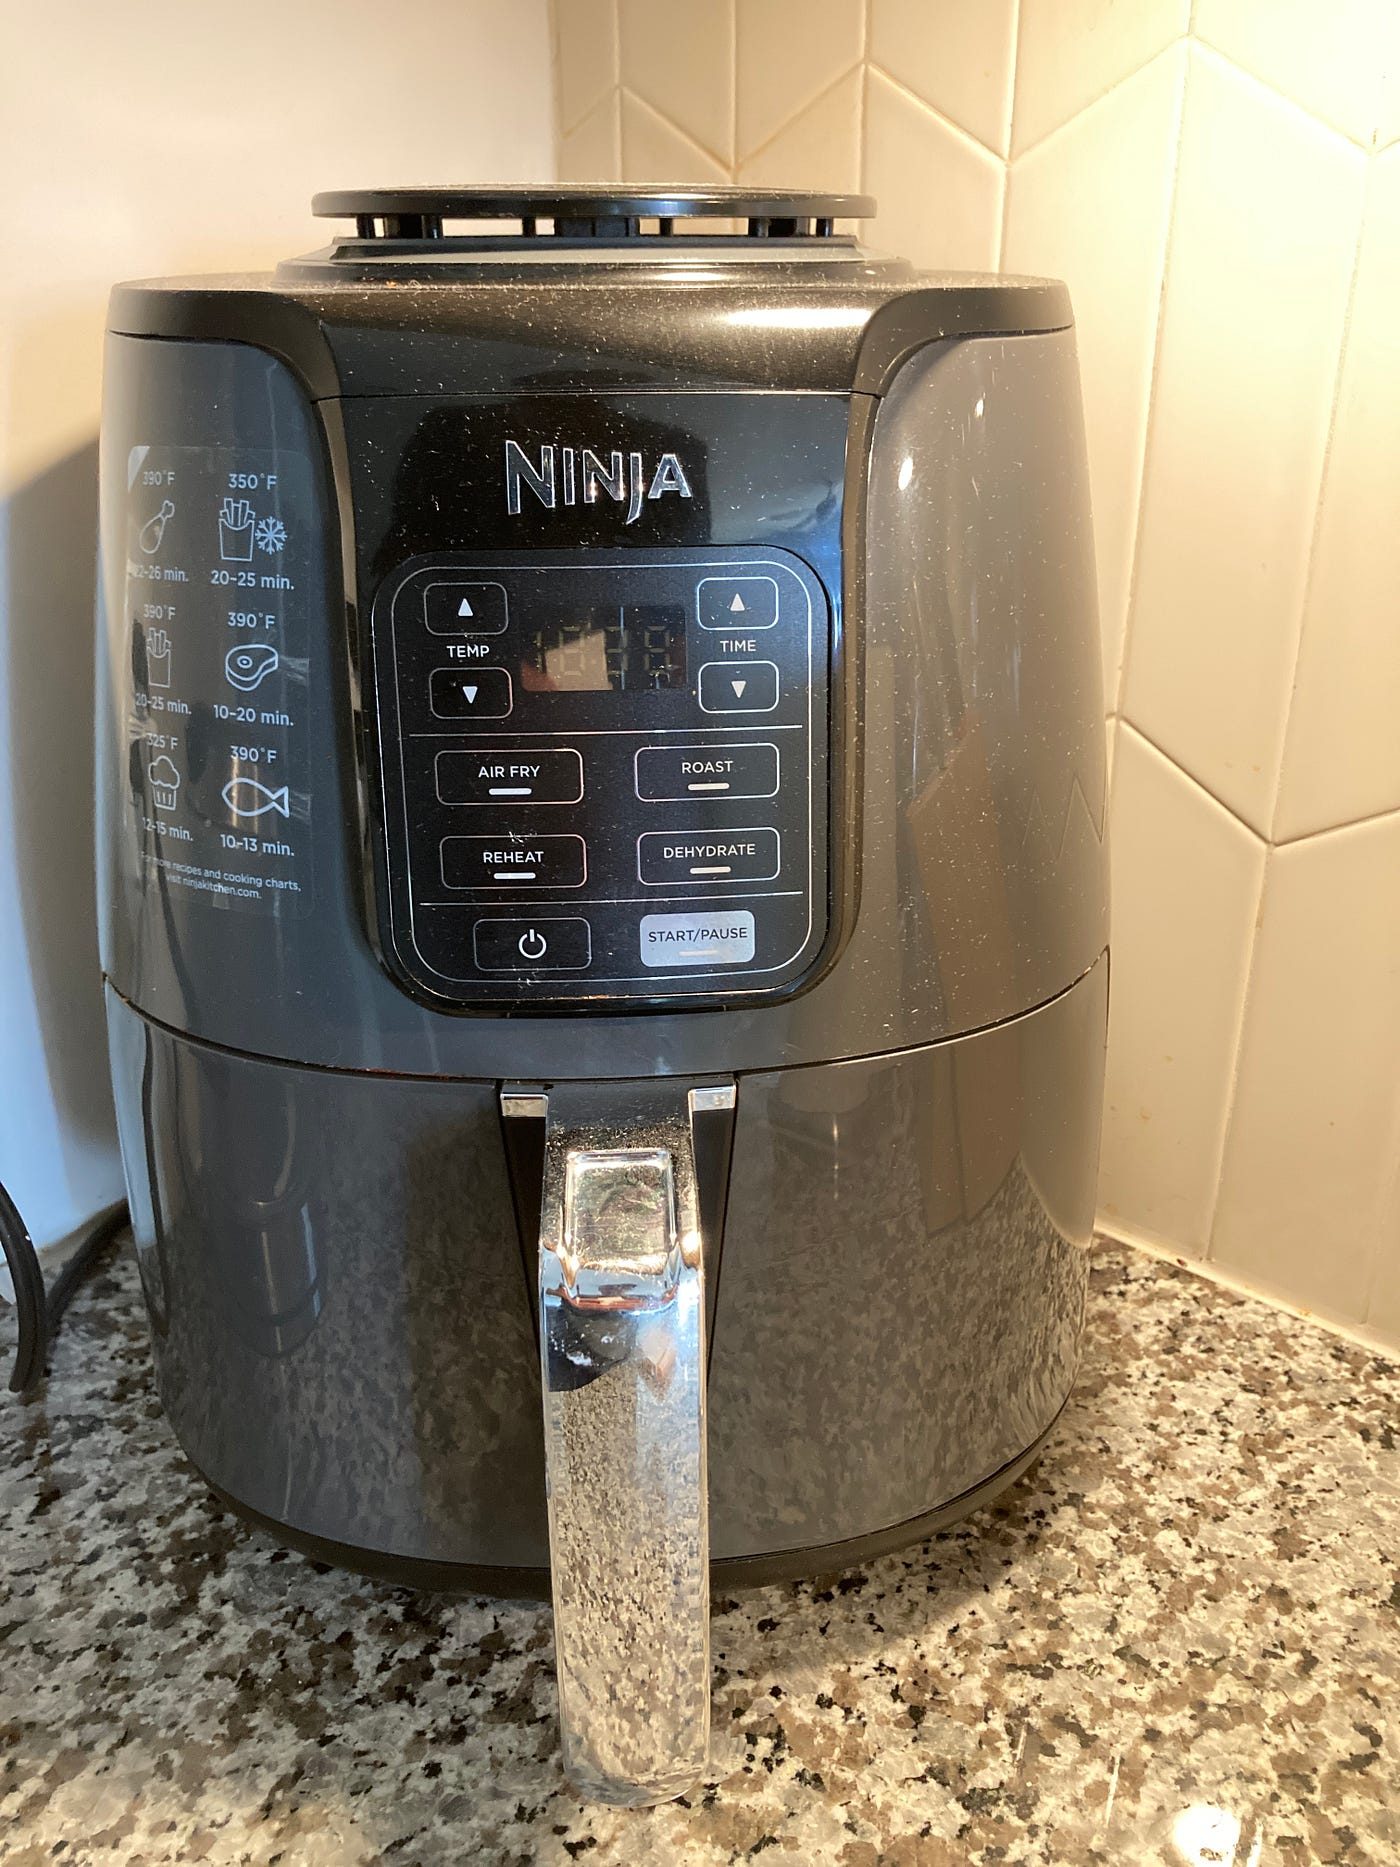 Design flaws in everyday things: Ninja Air Fryer